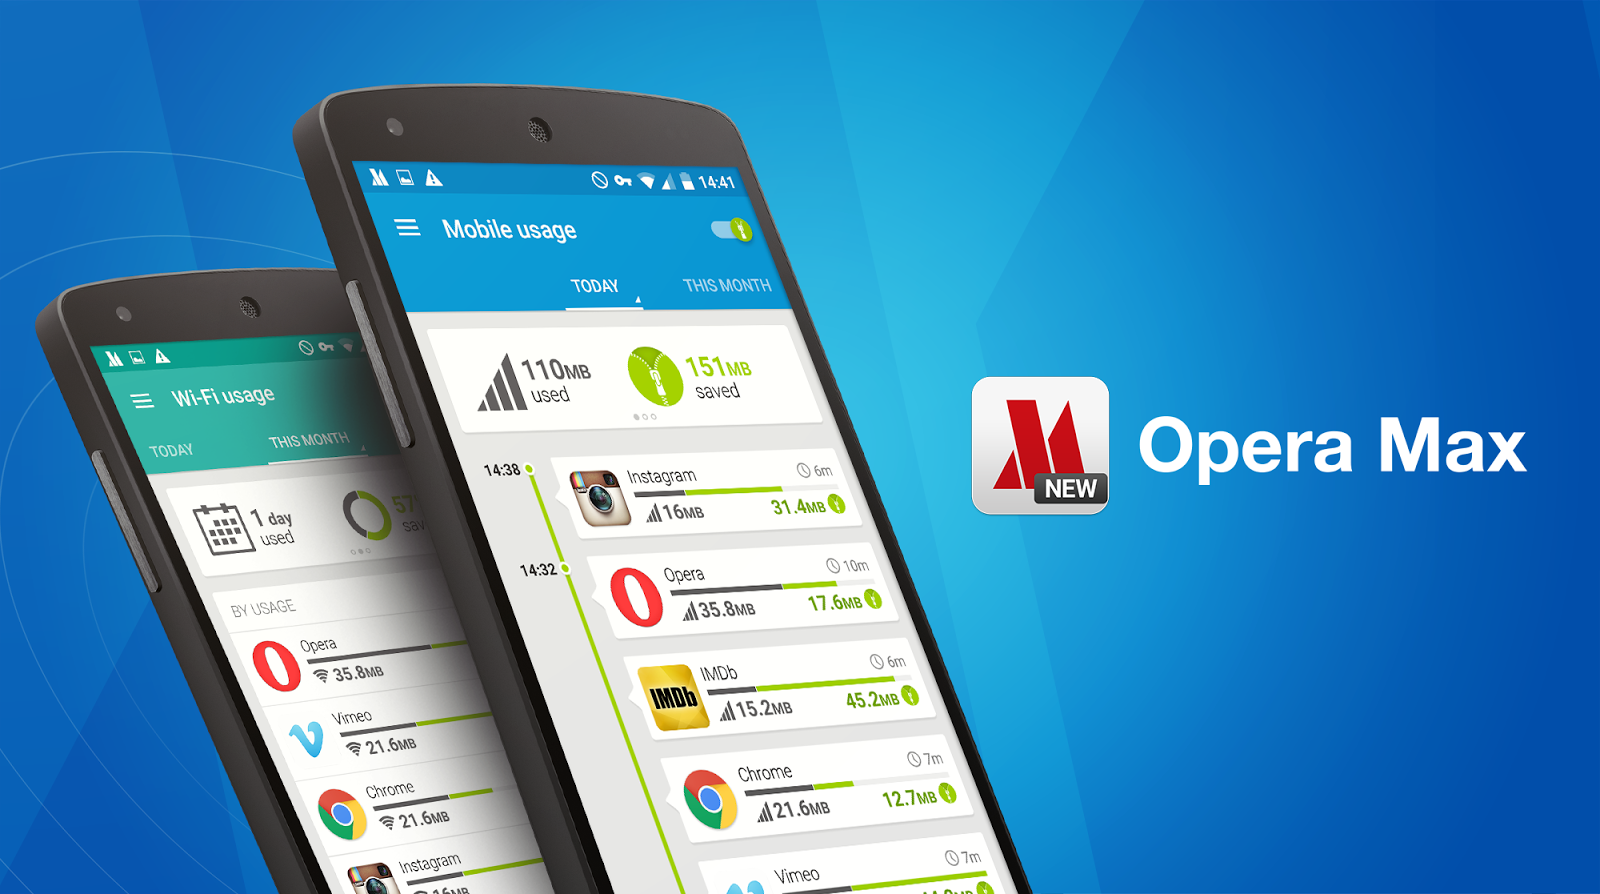 تطبيق Opera Max يحصل على تحديث جديد يوفر من استهلاك البيانات لتطبيق فيس بوك Facebook